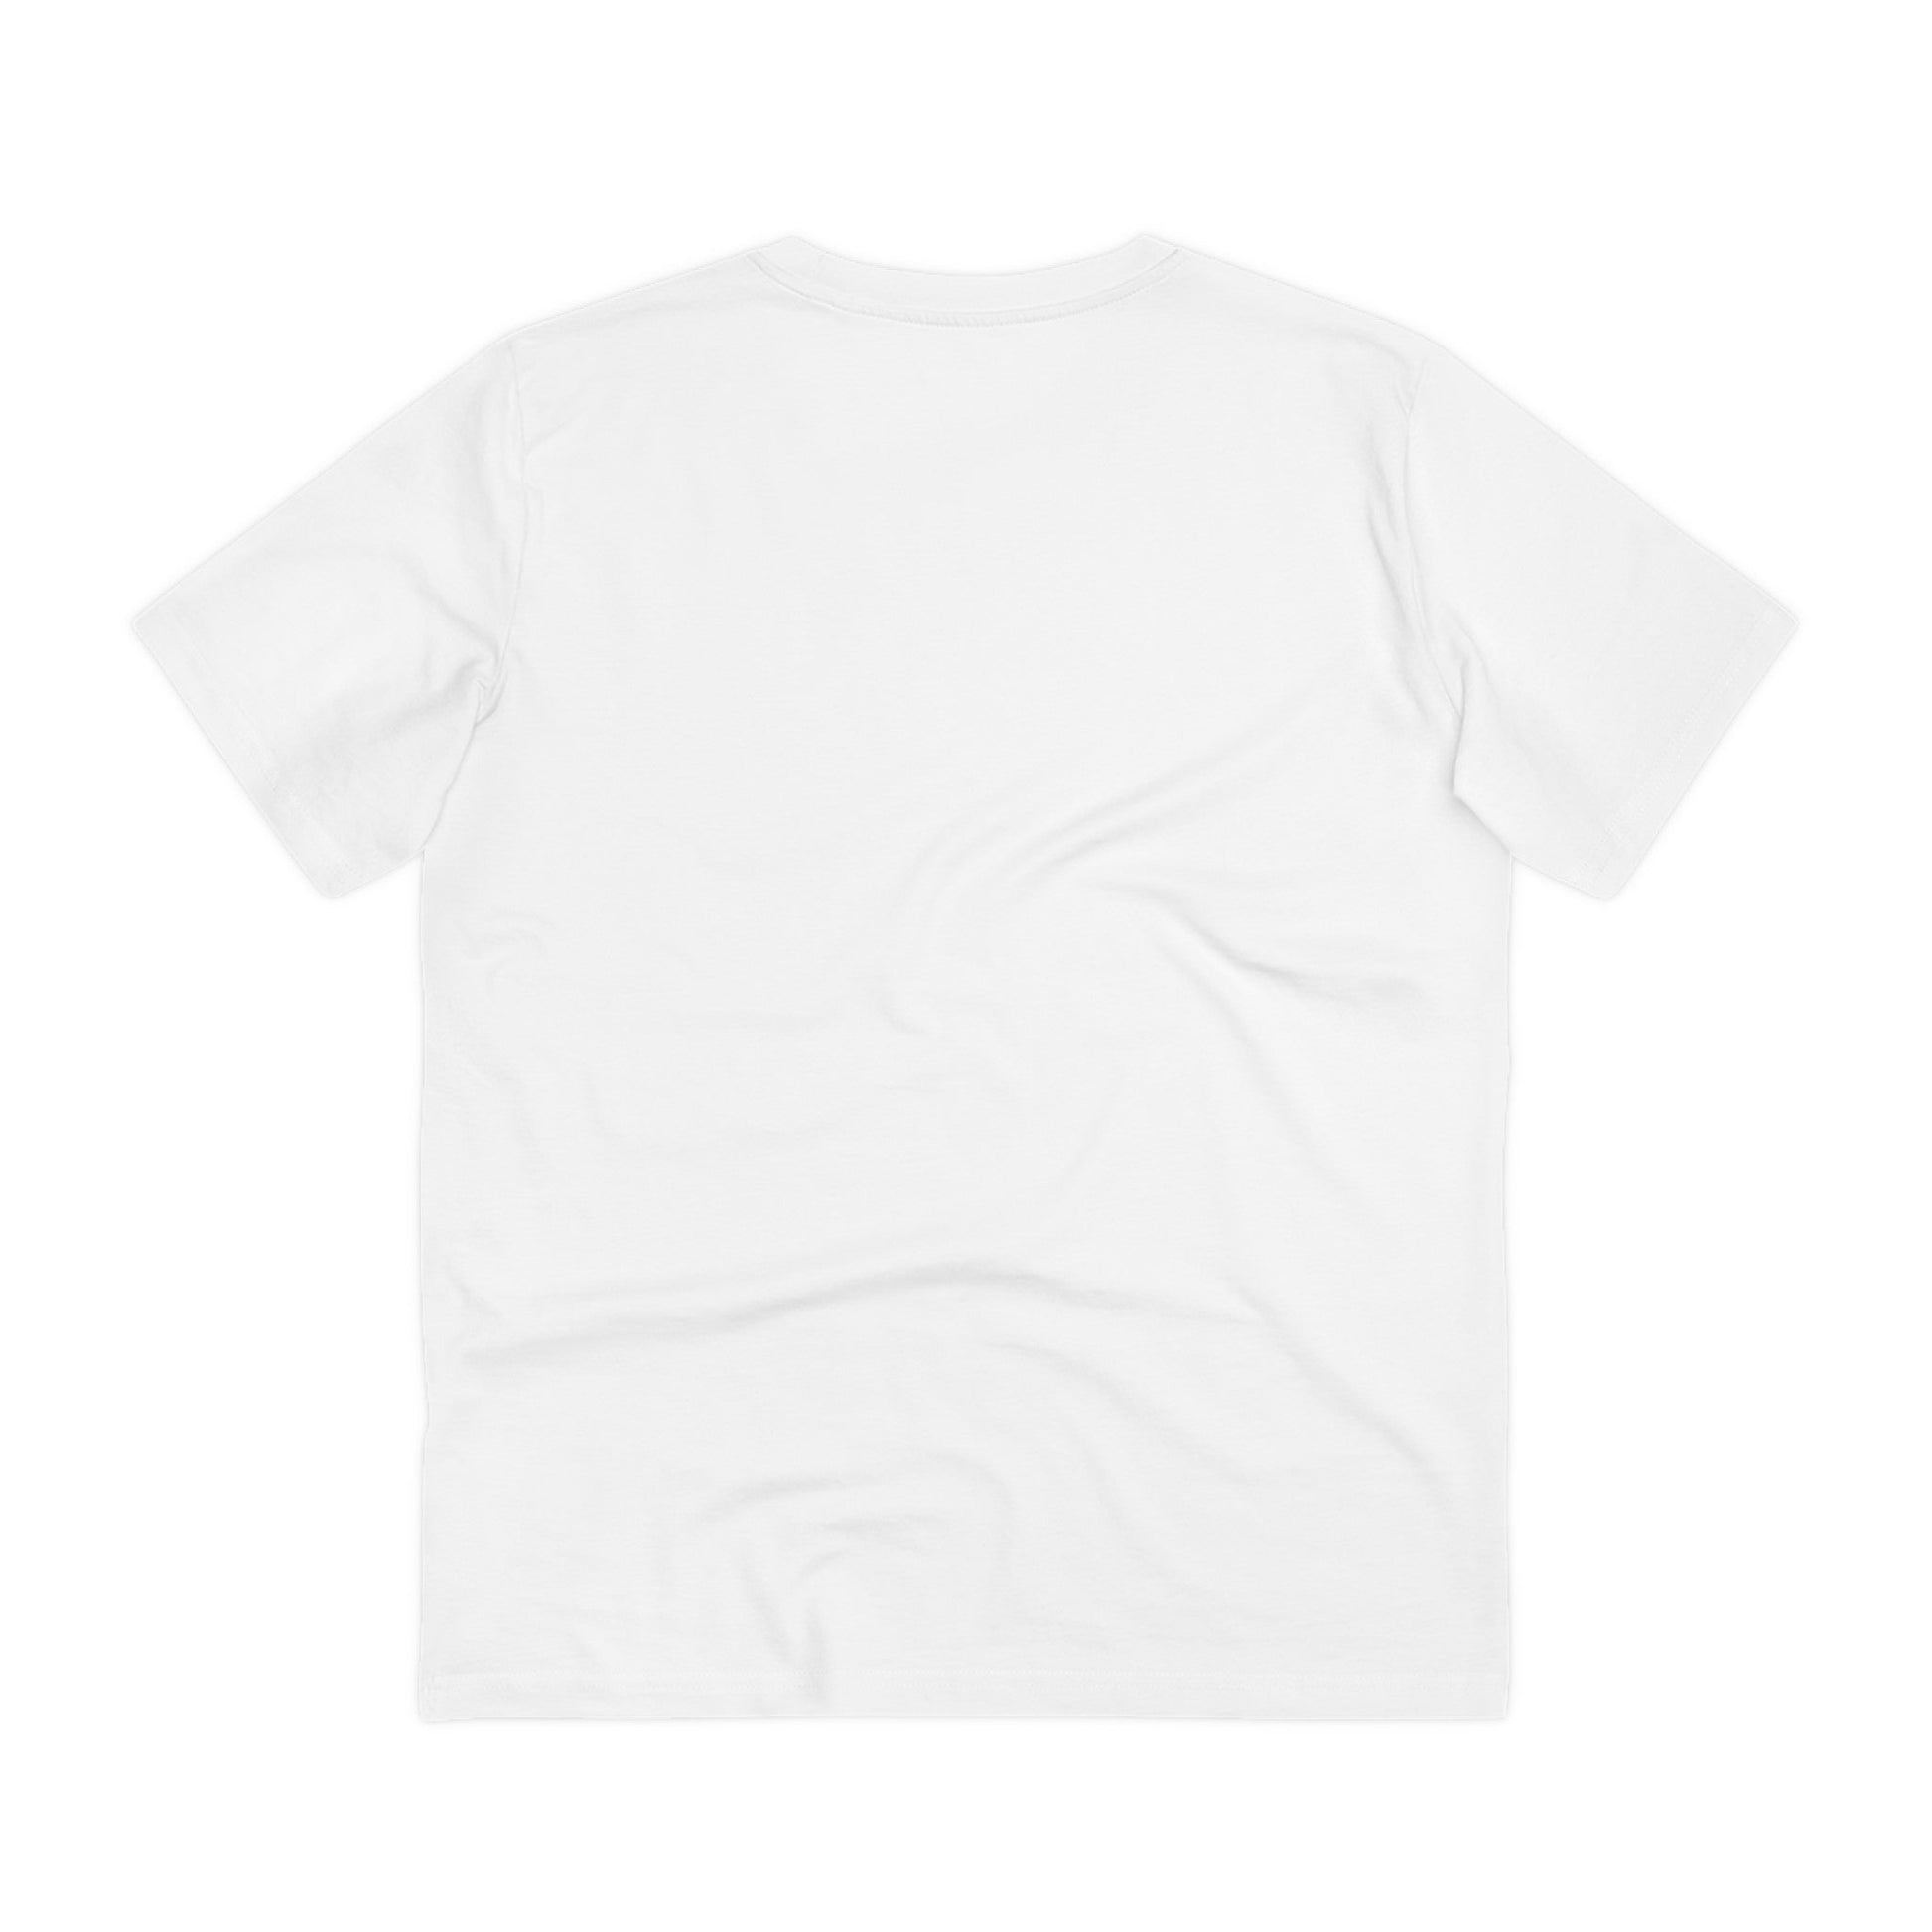 Printify T-Shirt Freedom is not free - Streetwear - King Breaker - Front Design